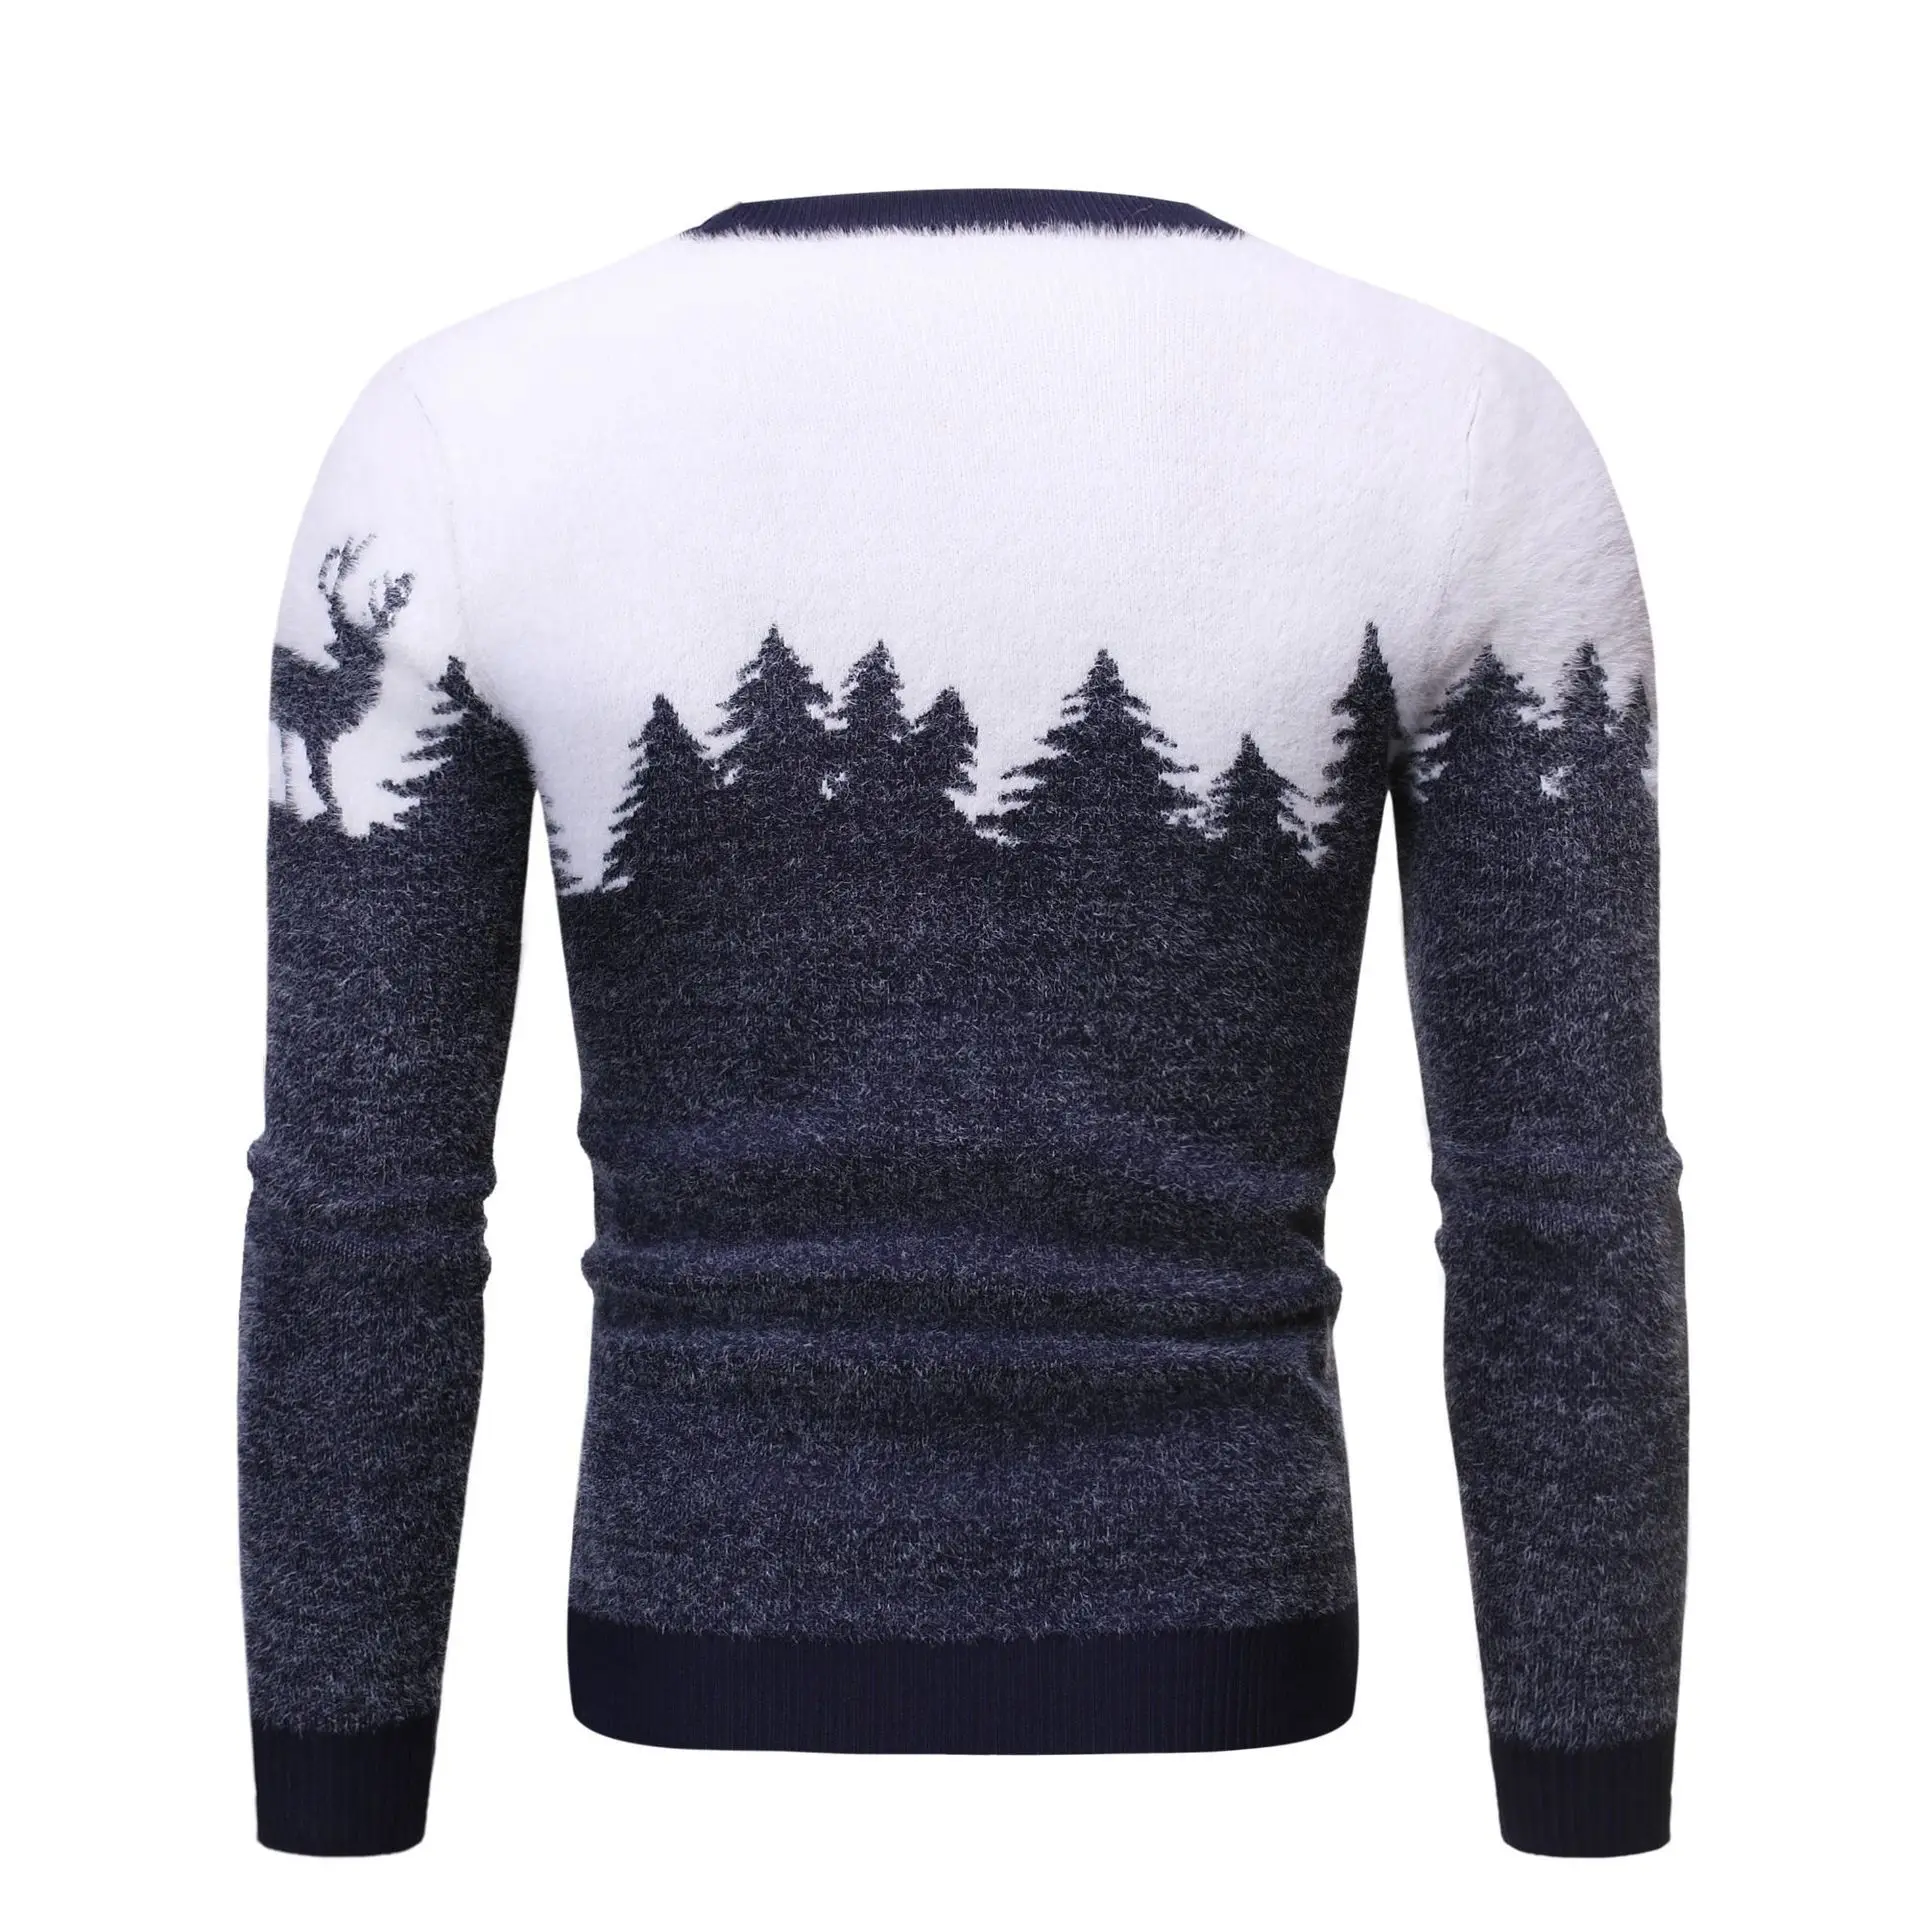 Caliente el estilo de otoño/invierno 2020 masculino de Navidad de los ciervos jersey suéter casual suéter de punto que adelgaza la tendencia masculina 3